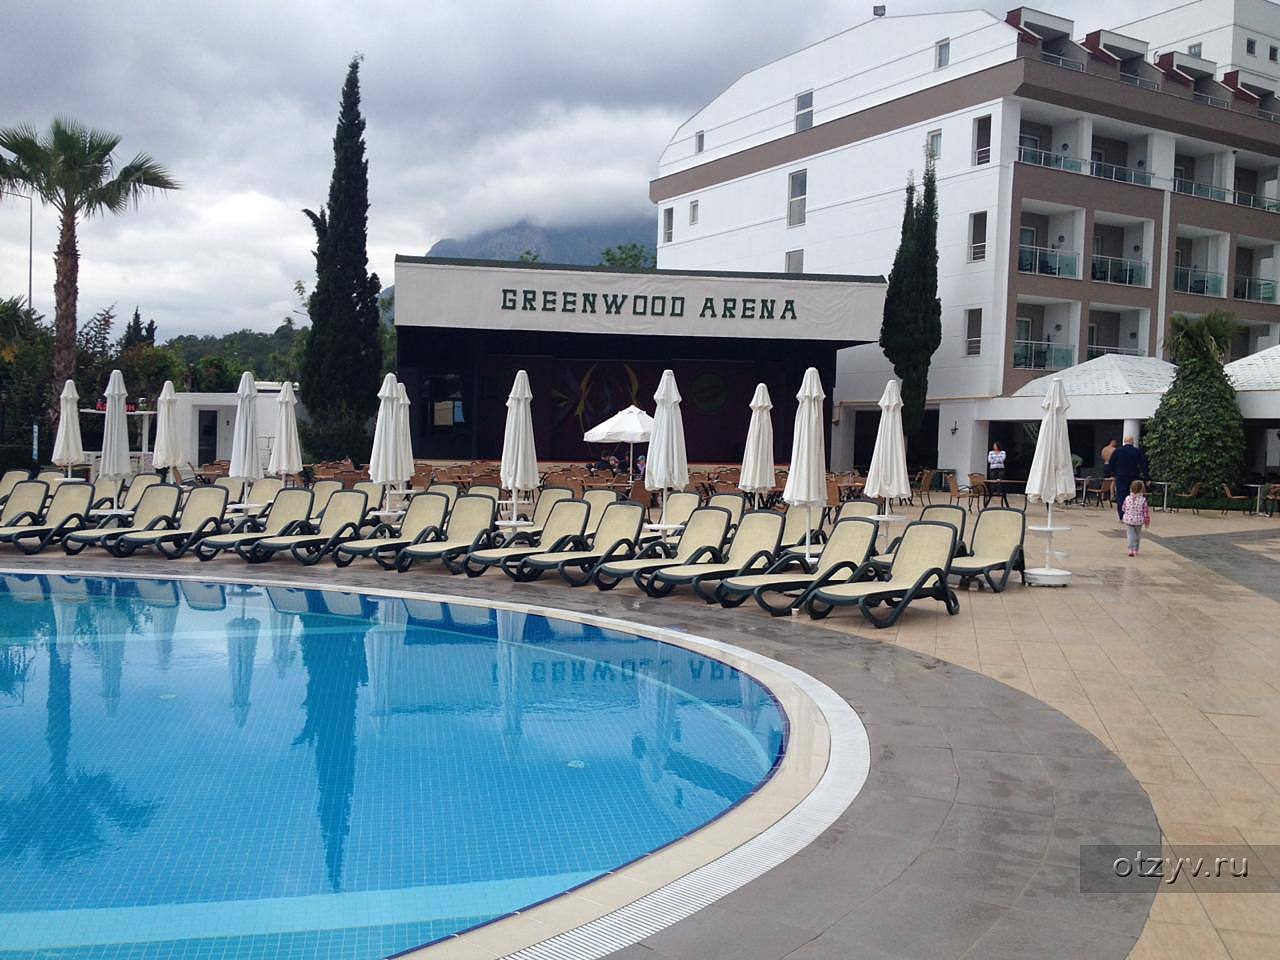 Sherwood Greenwood Resort